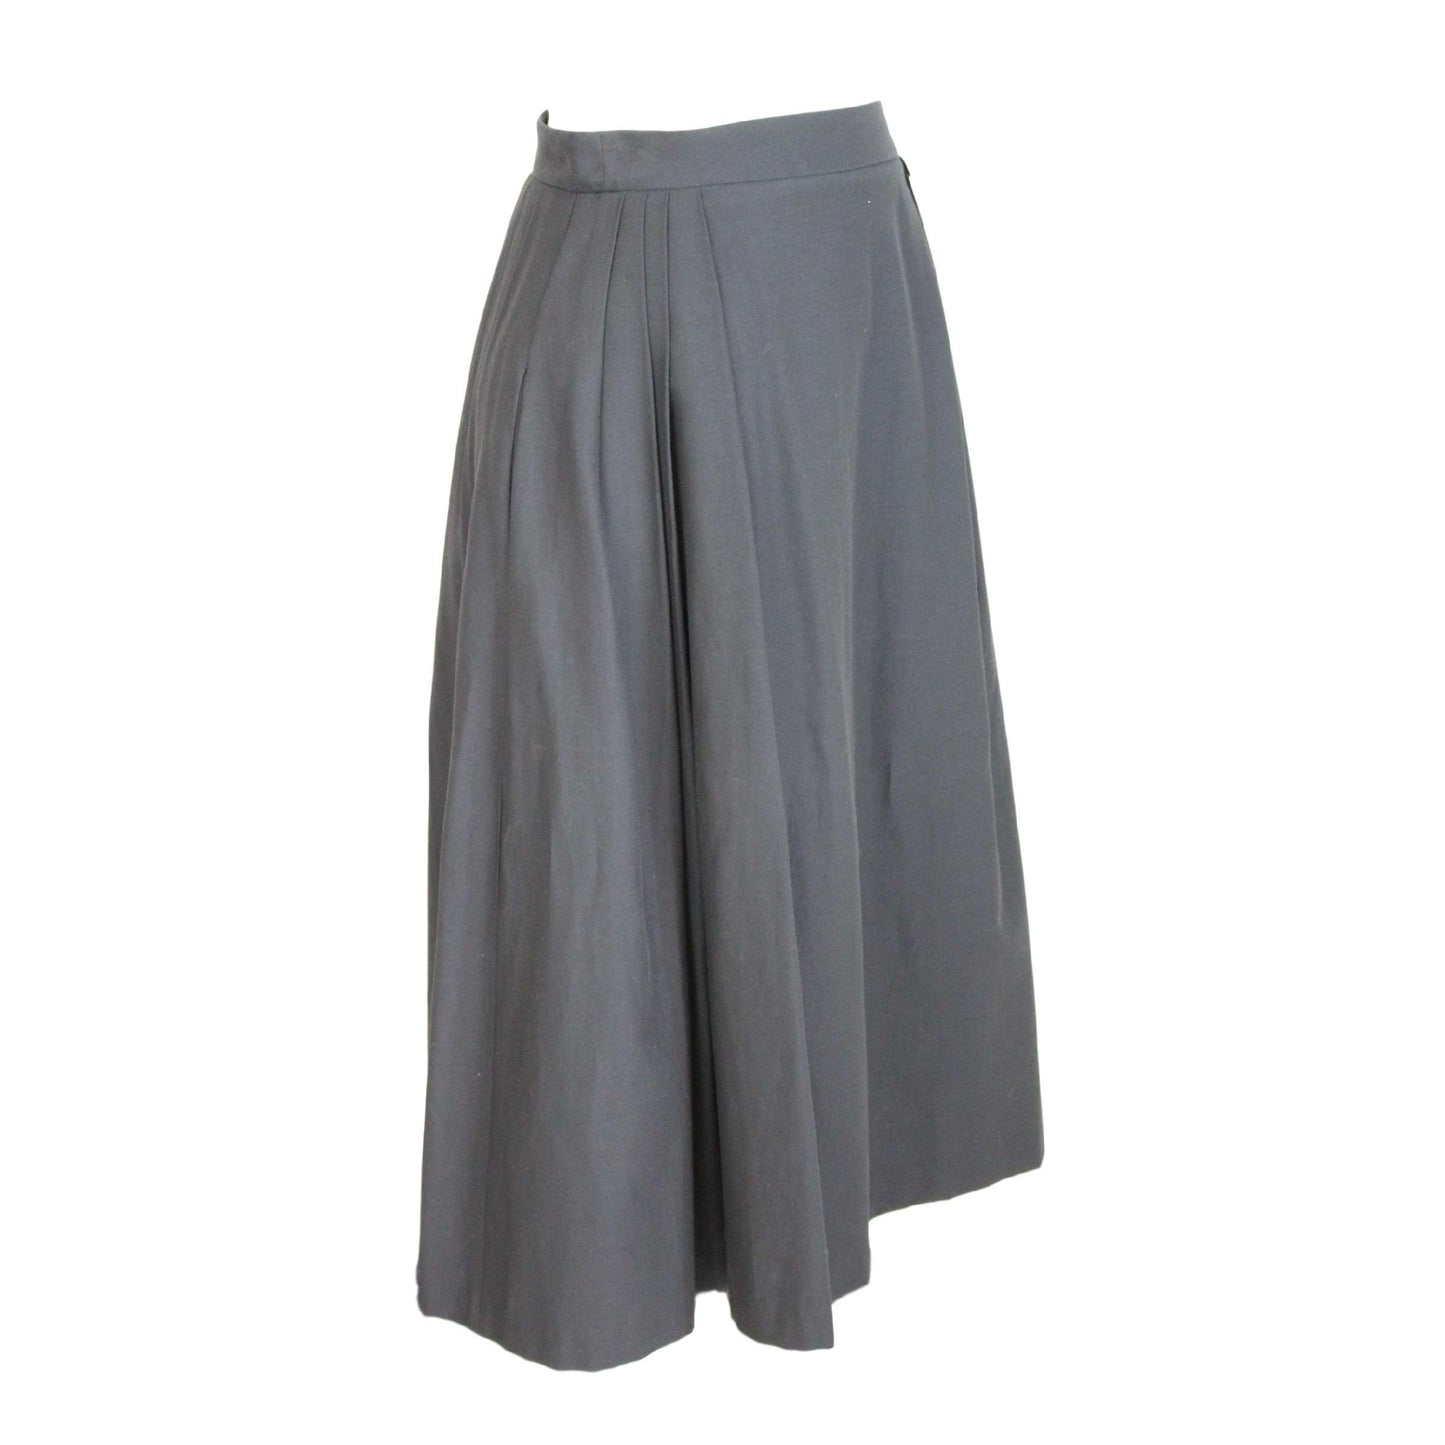 Mangano Black Cotton Long Skirt